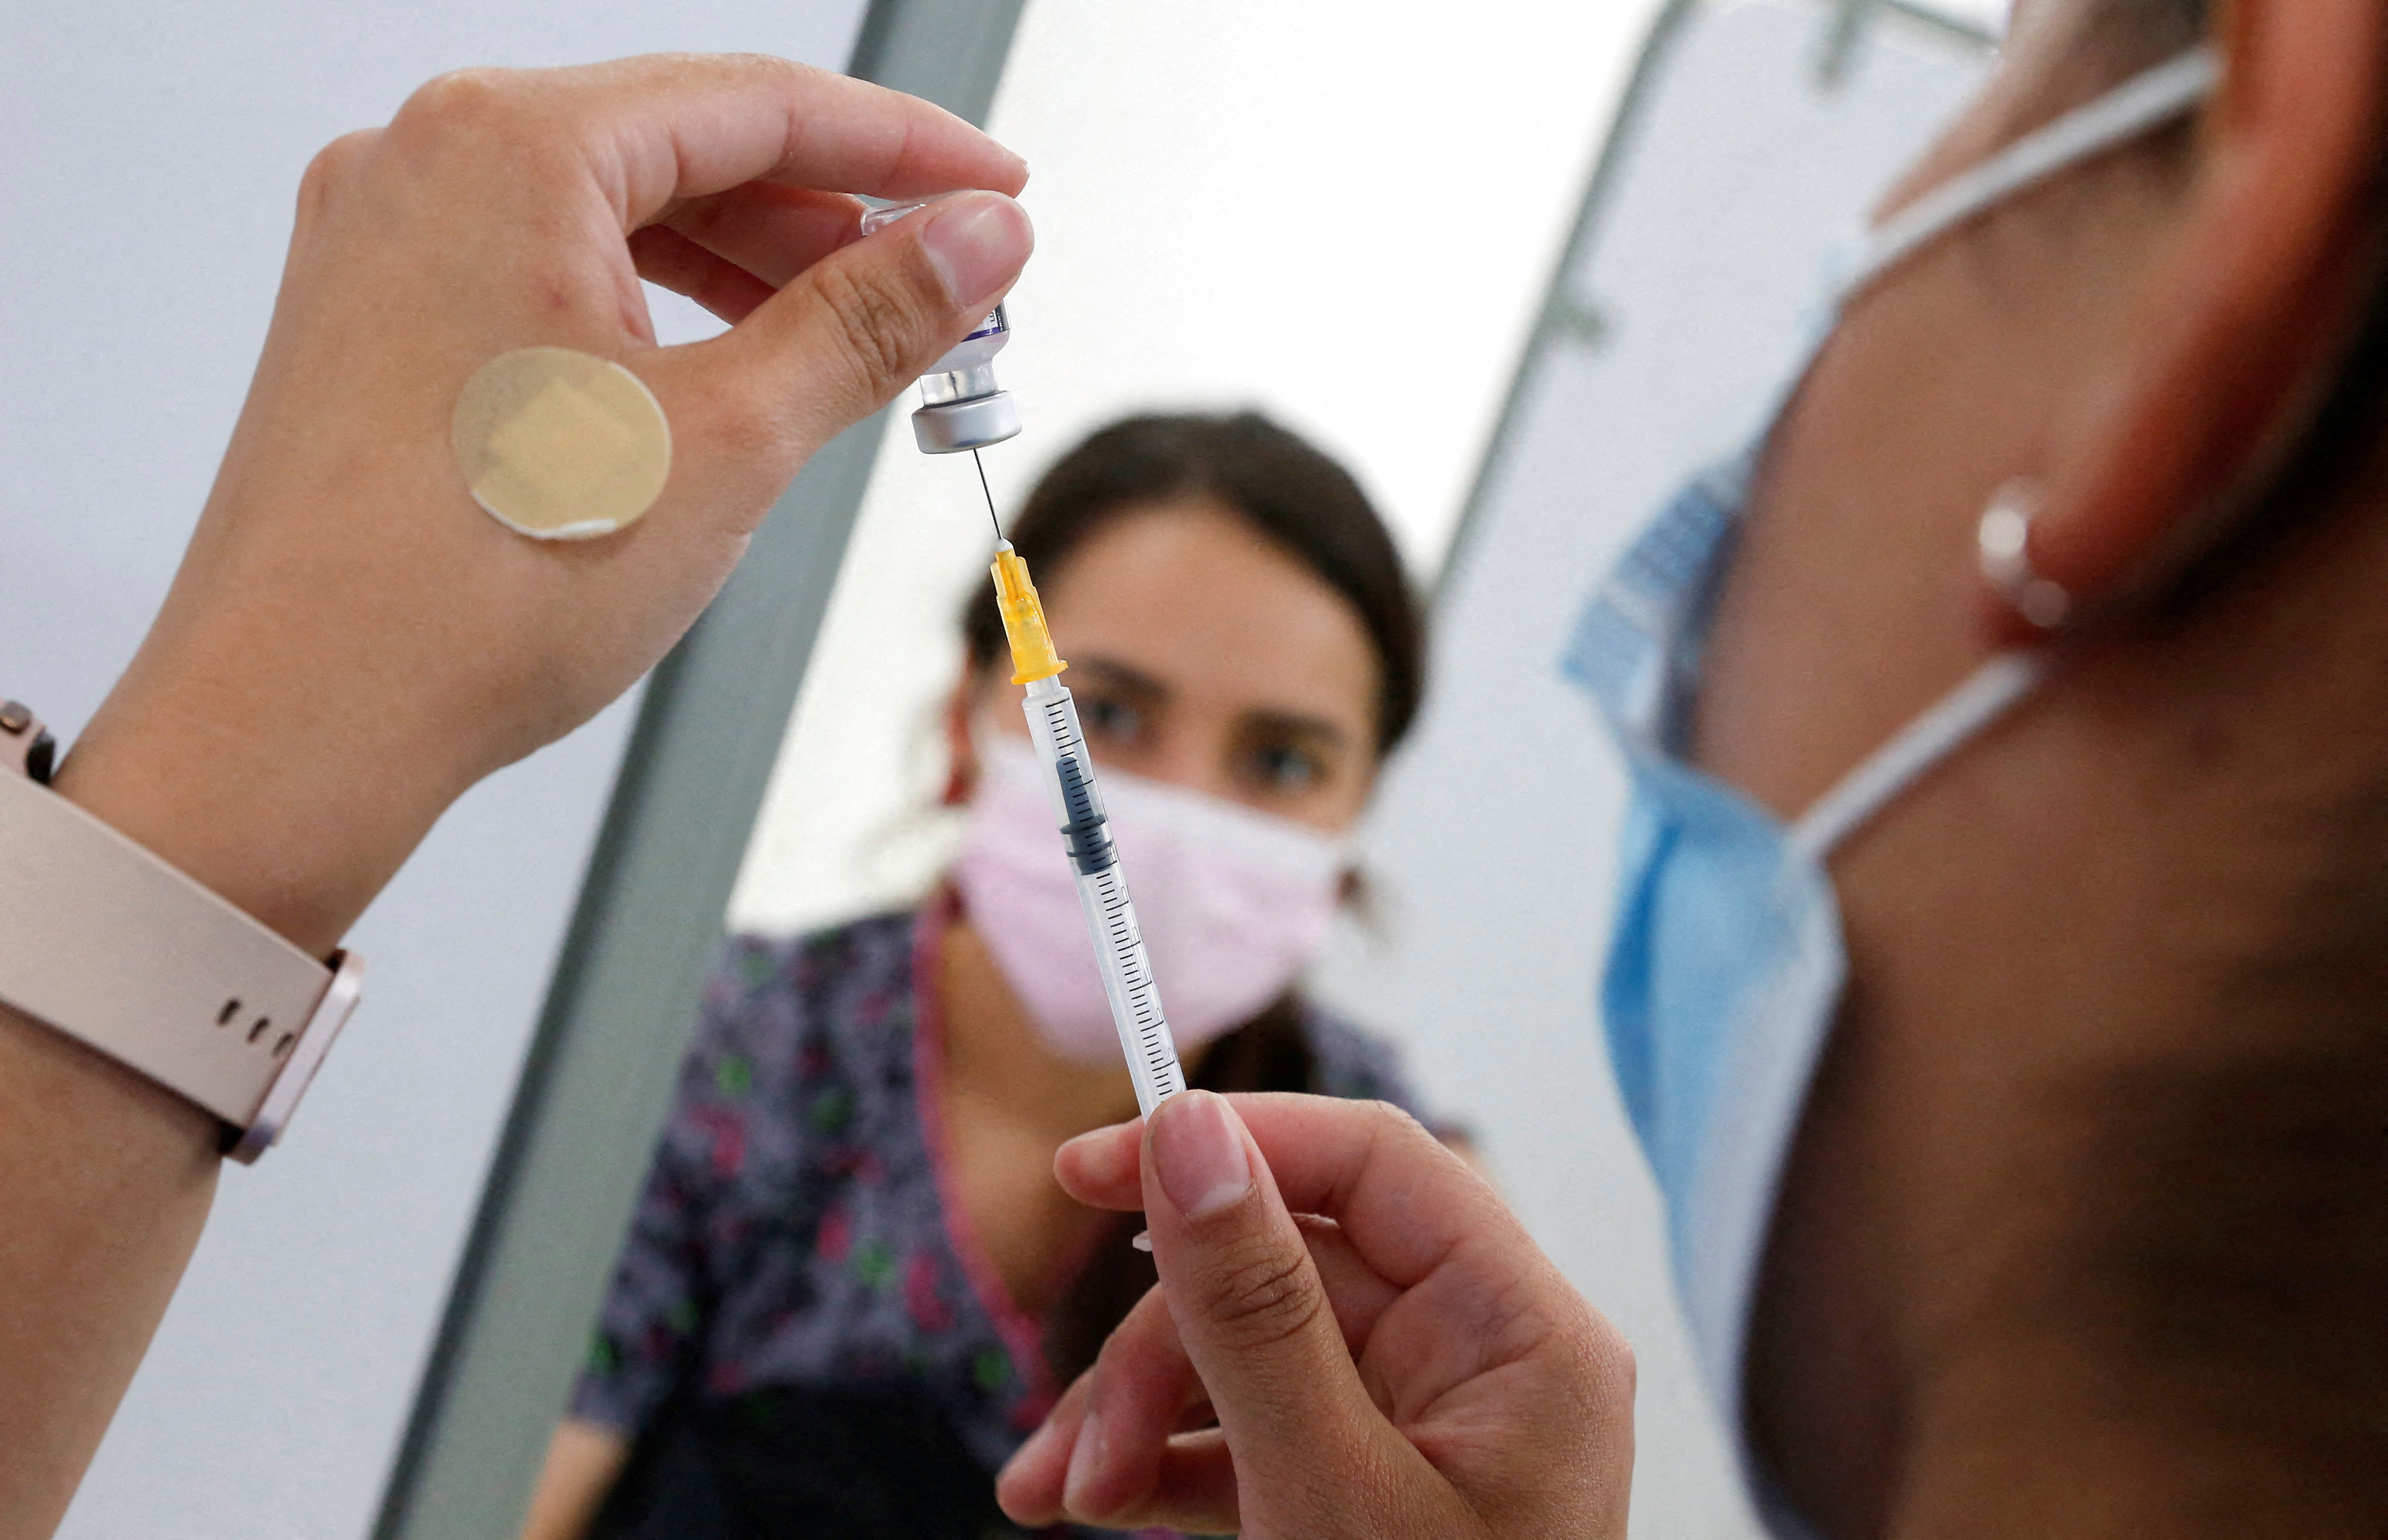 Un trabajador de la salud prepara una vacuna contra el coronavirus (COVID-19) el 3 de enero de 2023 en una clínica móvil de vacunación en Valparaíso, Chile.  REUTERS/Rodrigo Garrido